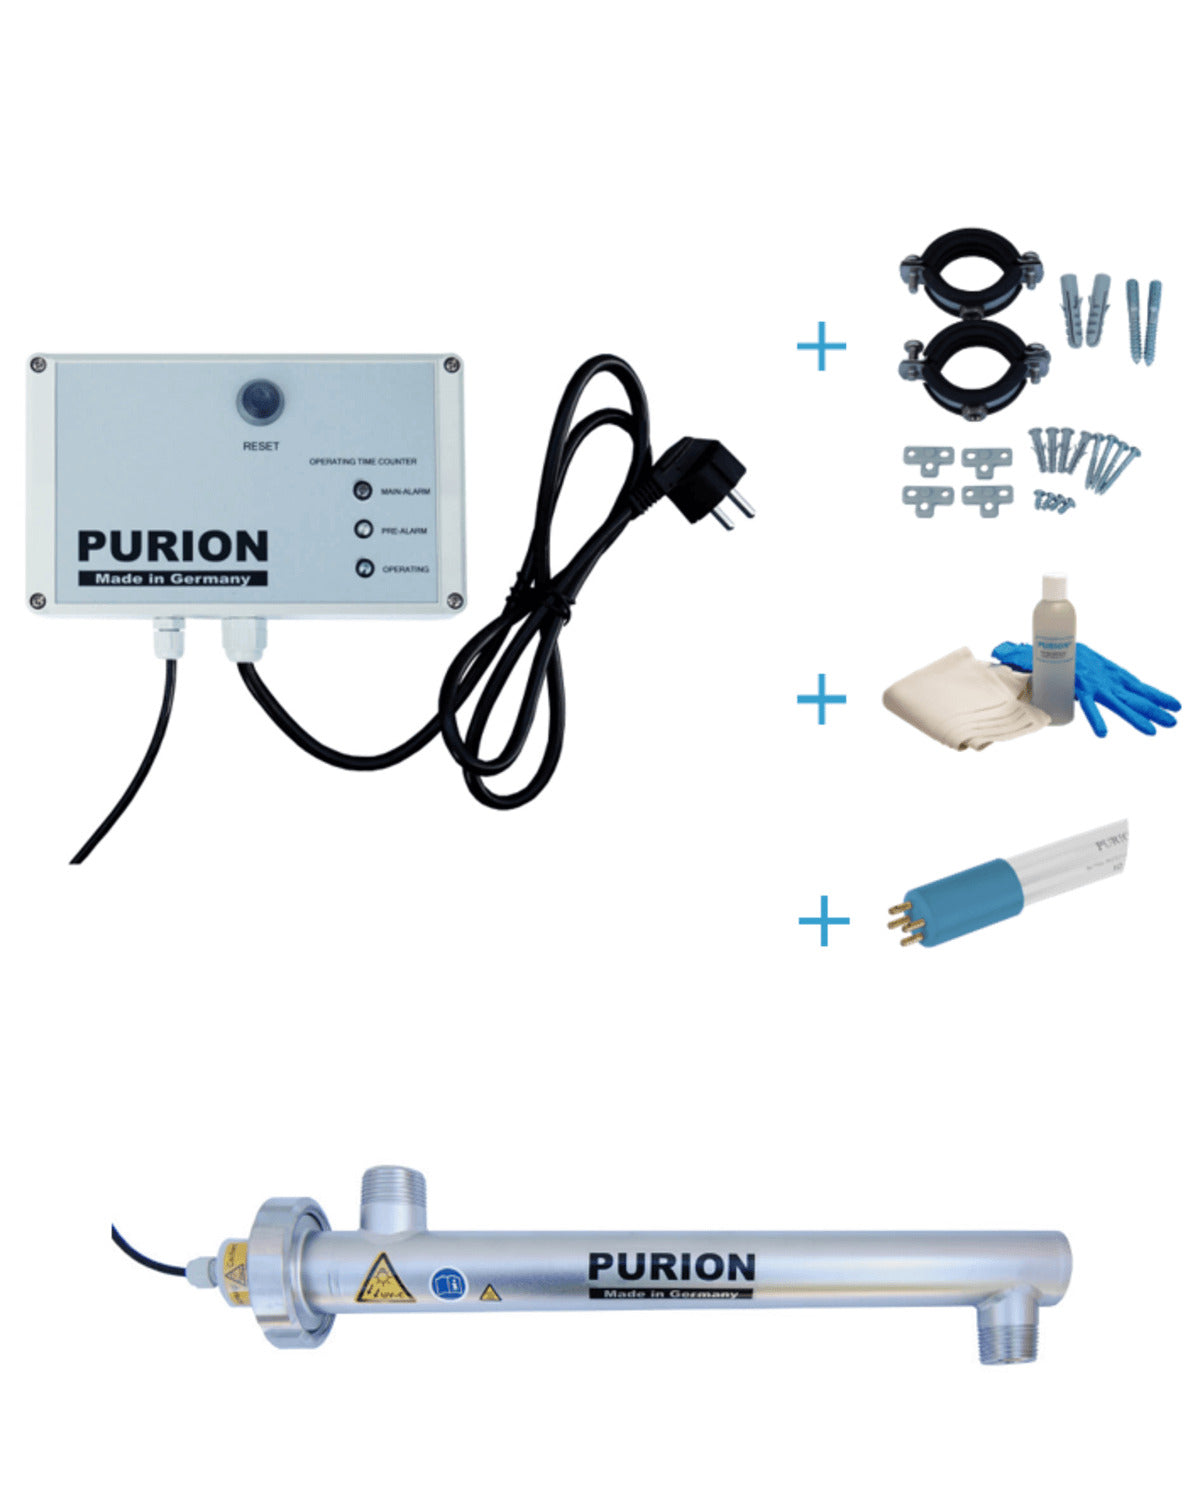 Das PURION 1000 OTC Bundle der PURION GmbH sorgt für die Selbstversorgung mit sauberem und desinfiziertem Trinkwasser.